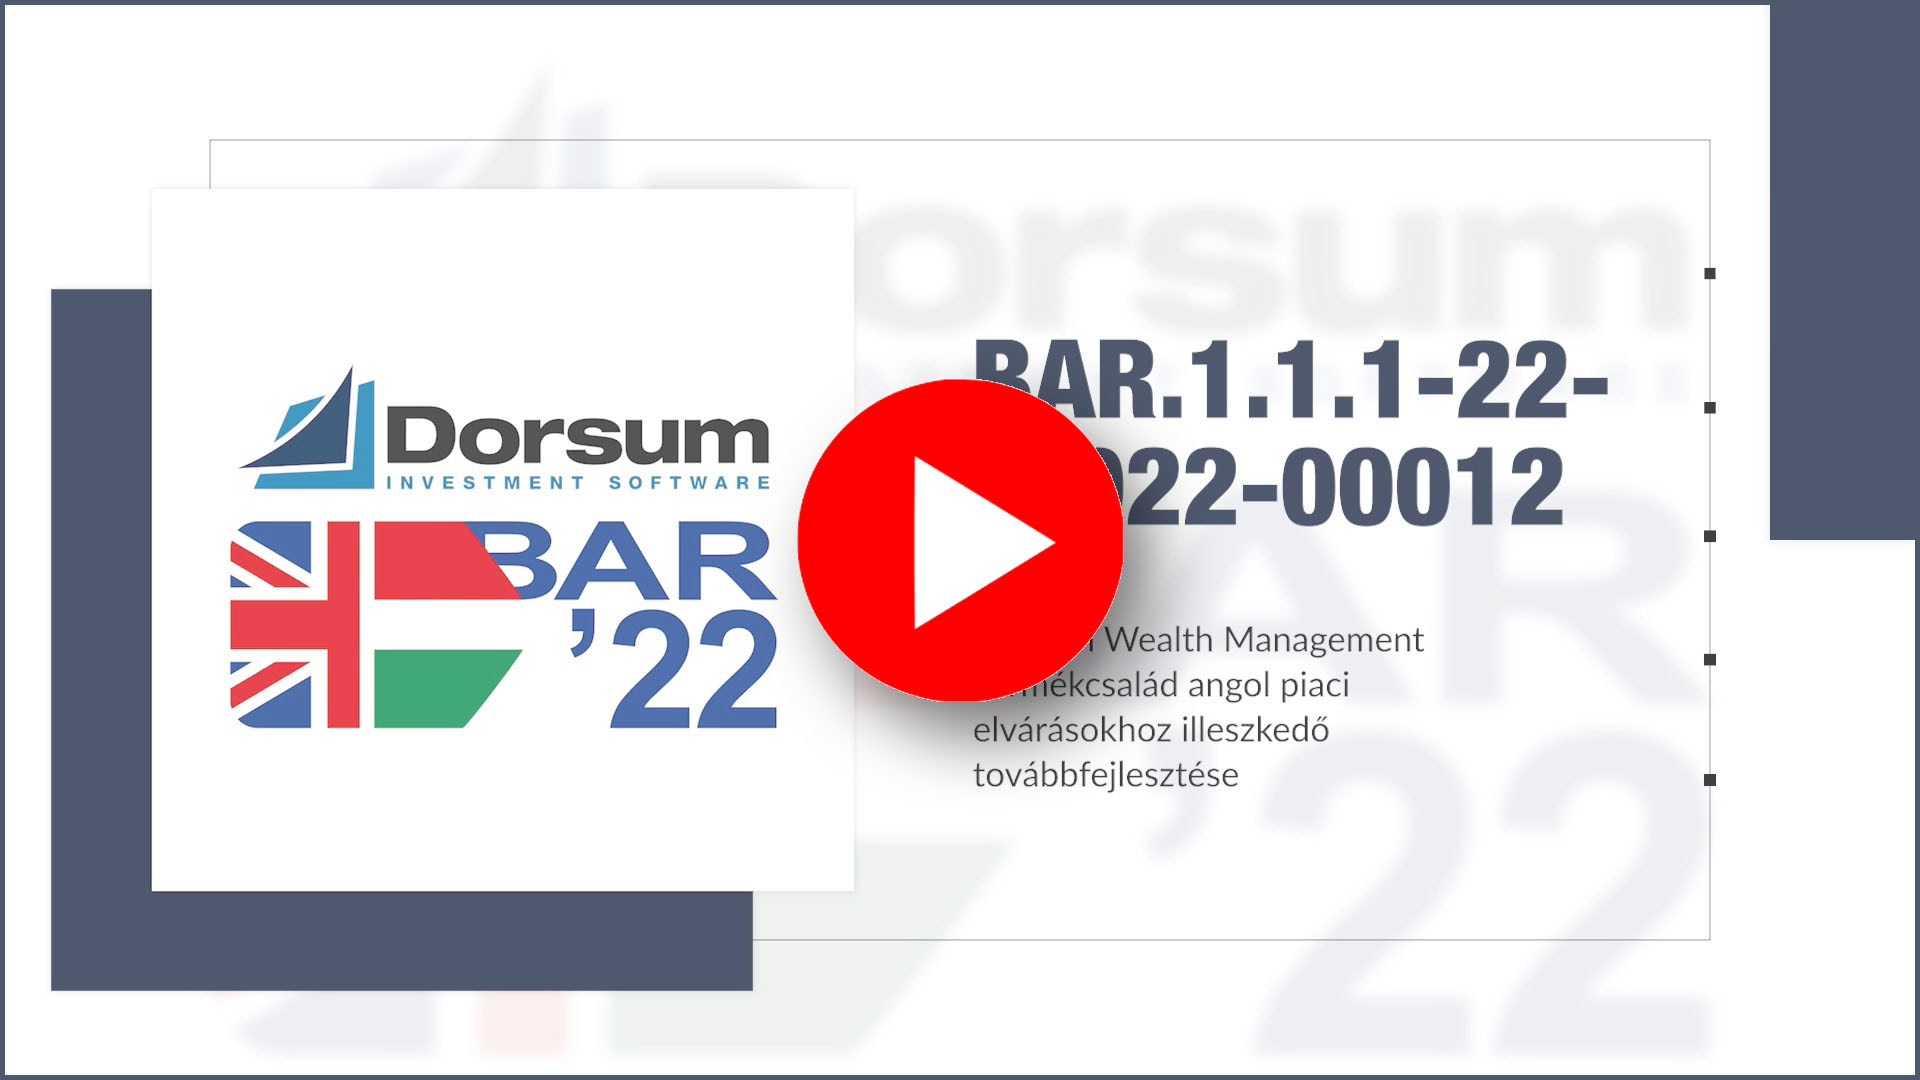 A Dorsum hamarosan zárja a BAR-1.1.1-22-2022-00012 projektet, az eredményeket videóban foglaltuk össze